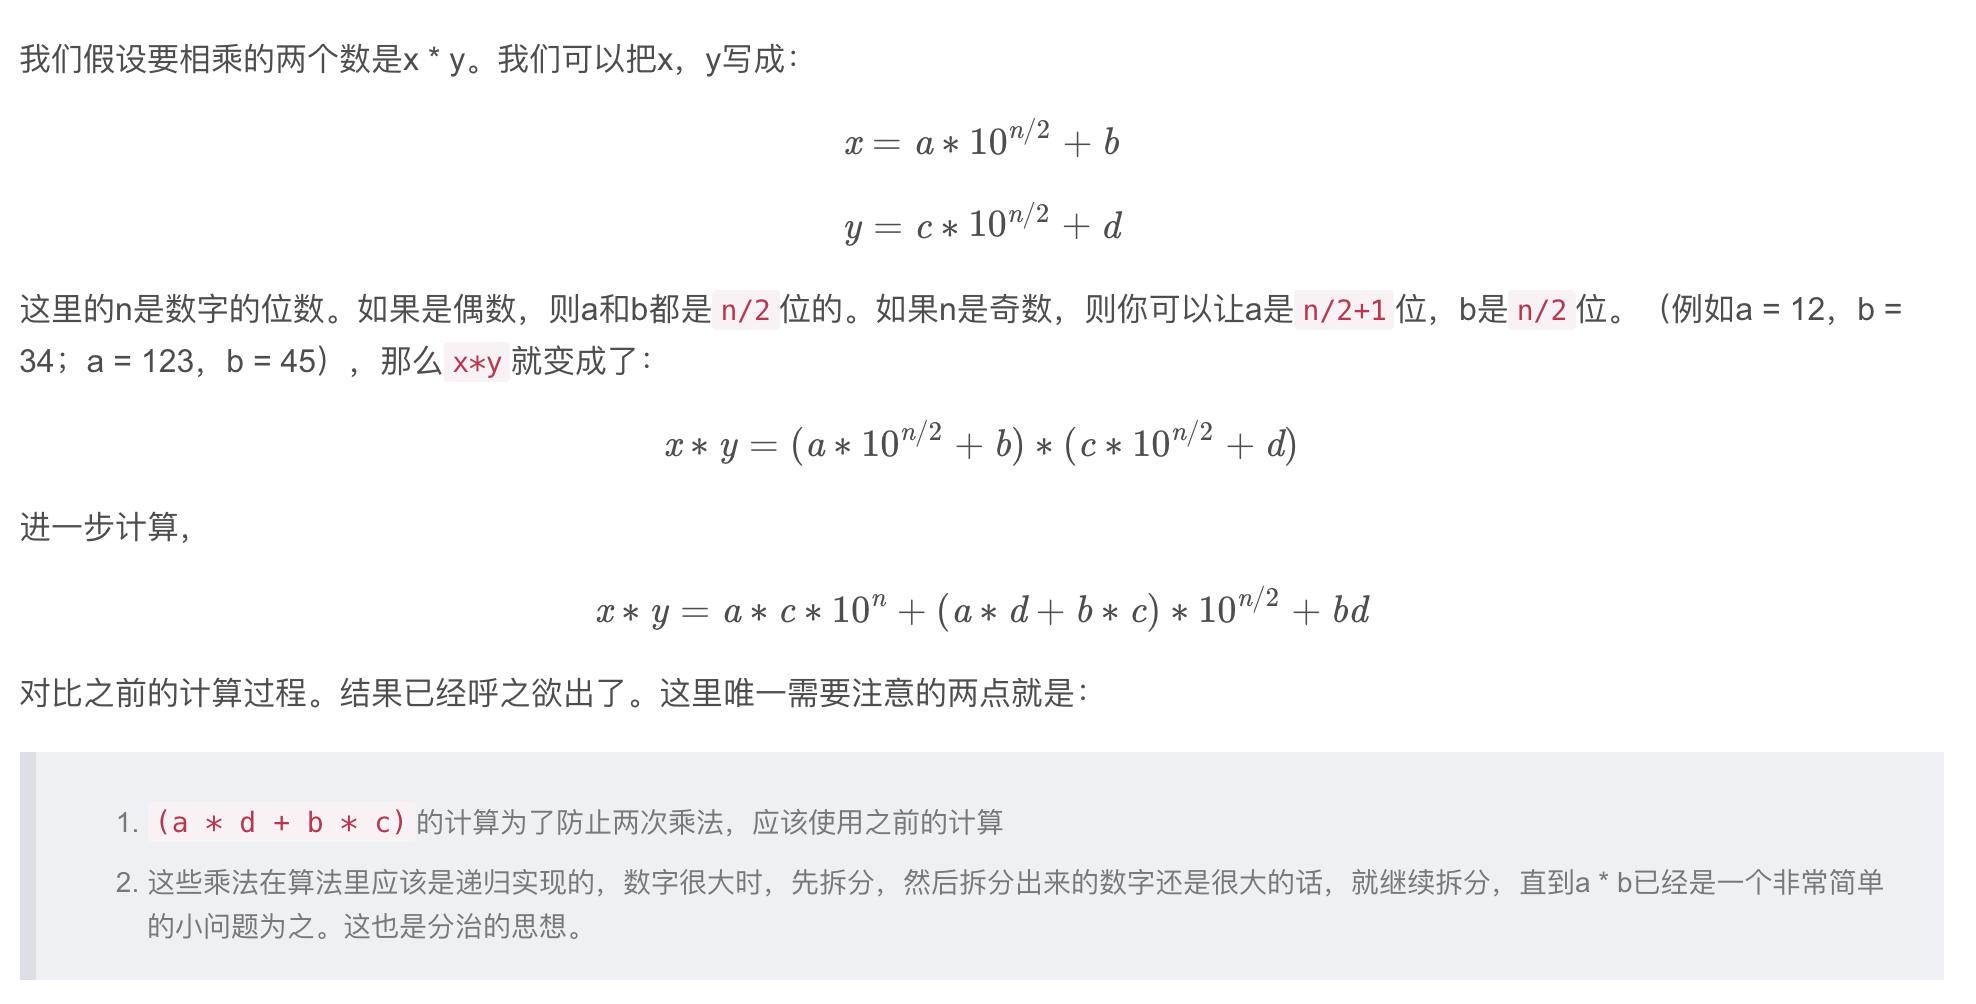 大数乘法 - Karatsuba算法 - 文章图片